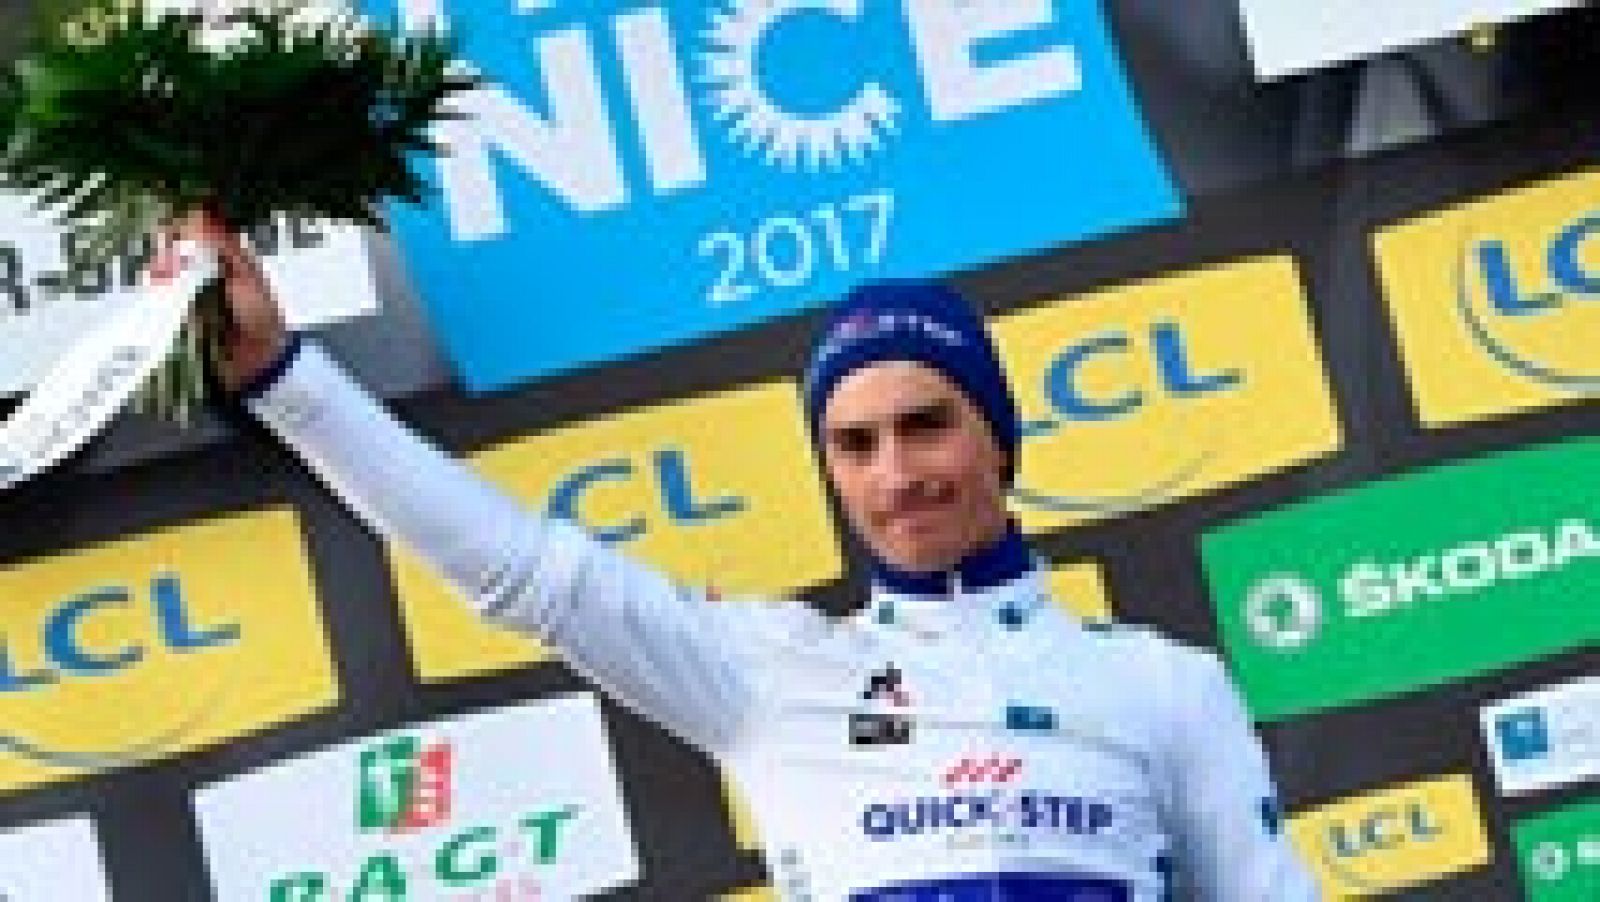 El ciclista francés Julian Alaphilippe del Quick-Step se ha impuesto en la cuarta jornada de la París-Niza y se coloca como líder provisional de la clasifiación general. Por detrás llegaron Alberto Contador, del Trek, (+19''), Tony Gallopin, del Lotto (+20") y Gorka Izagirre, del Movistar (+20"). [París-Niza en directo, 5-12 de marzo a las 15:20h. en TdP y RTVE.es]